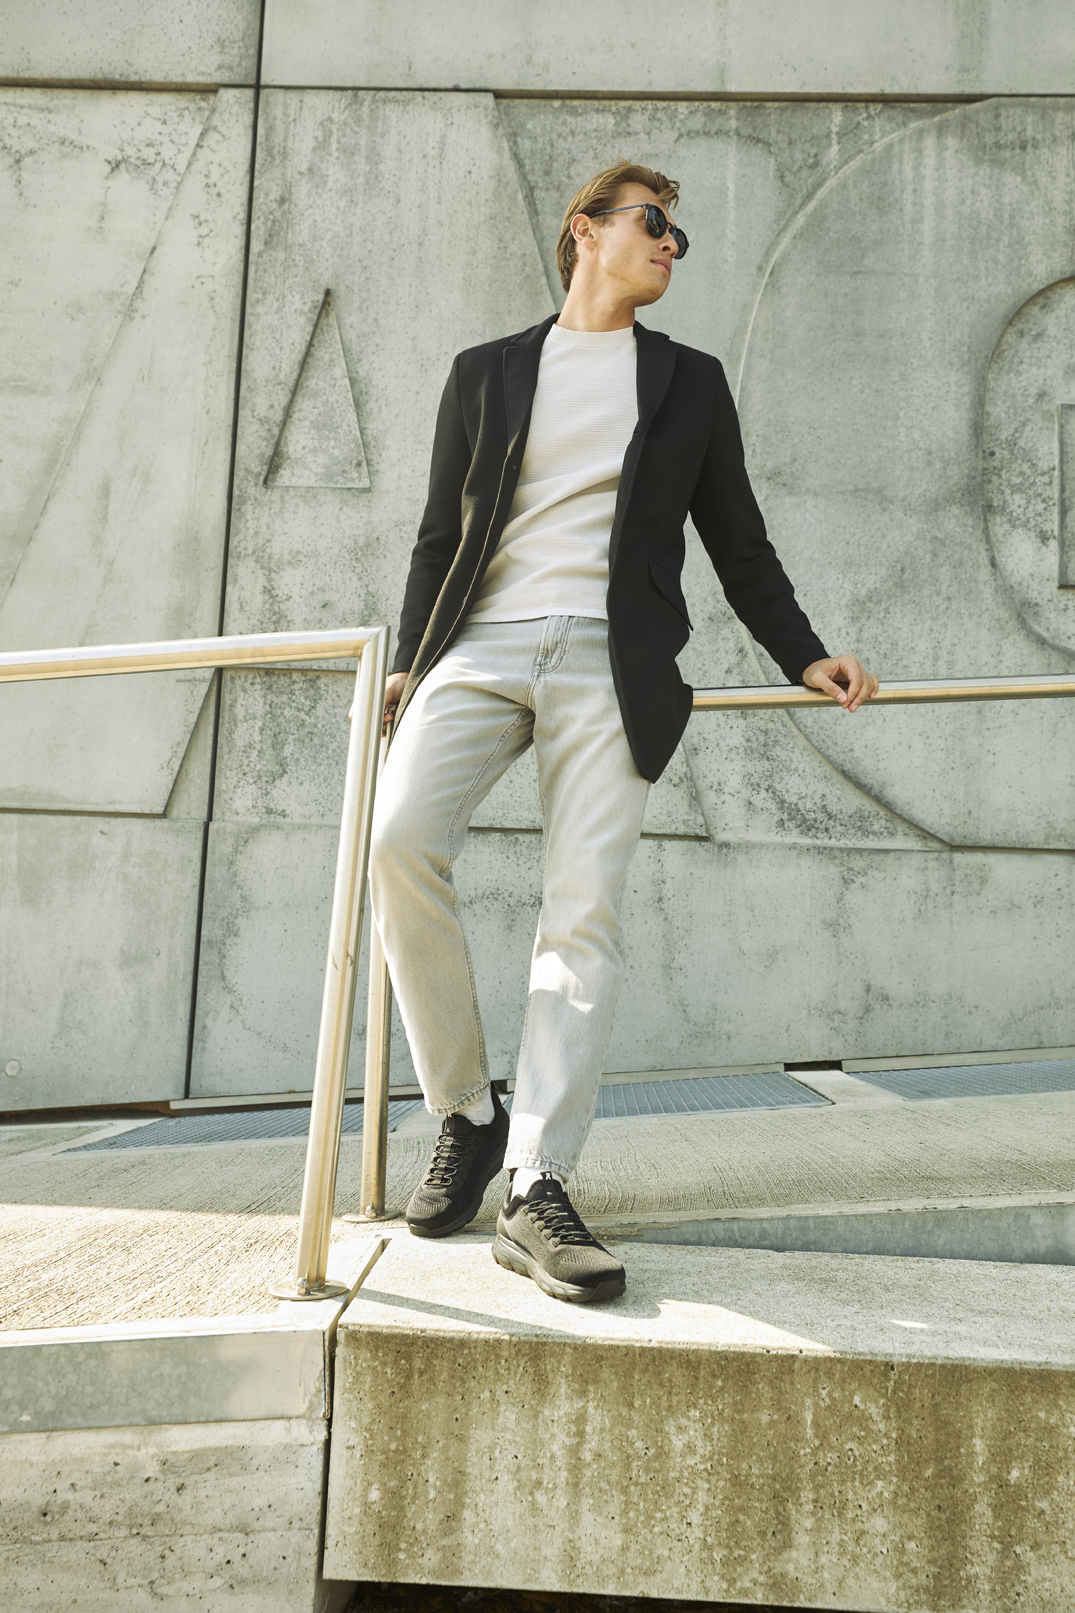 Schwarze R-EVOLUTION Slipper von Rieker aus Textil mit Gummizug, extra softer und herausnehmbarer Einlegesohle sowie super leichter und flexibler Laufsohle. Passend zu den Schuhen trägt der blonde Mann eine helle Jeans mit einem weißen Pullover und einem schwarzen Mantel. Er steht an einem Geländer.